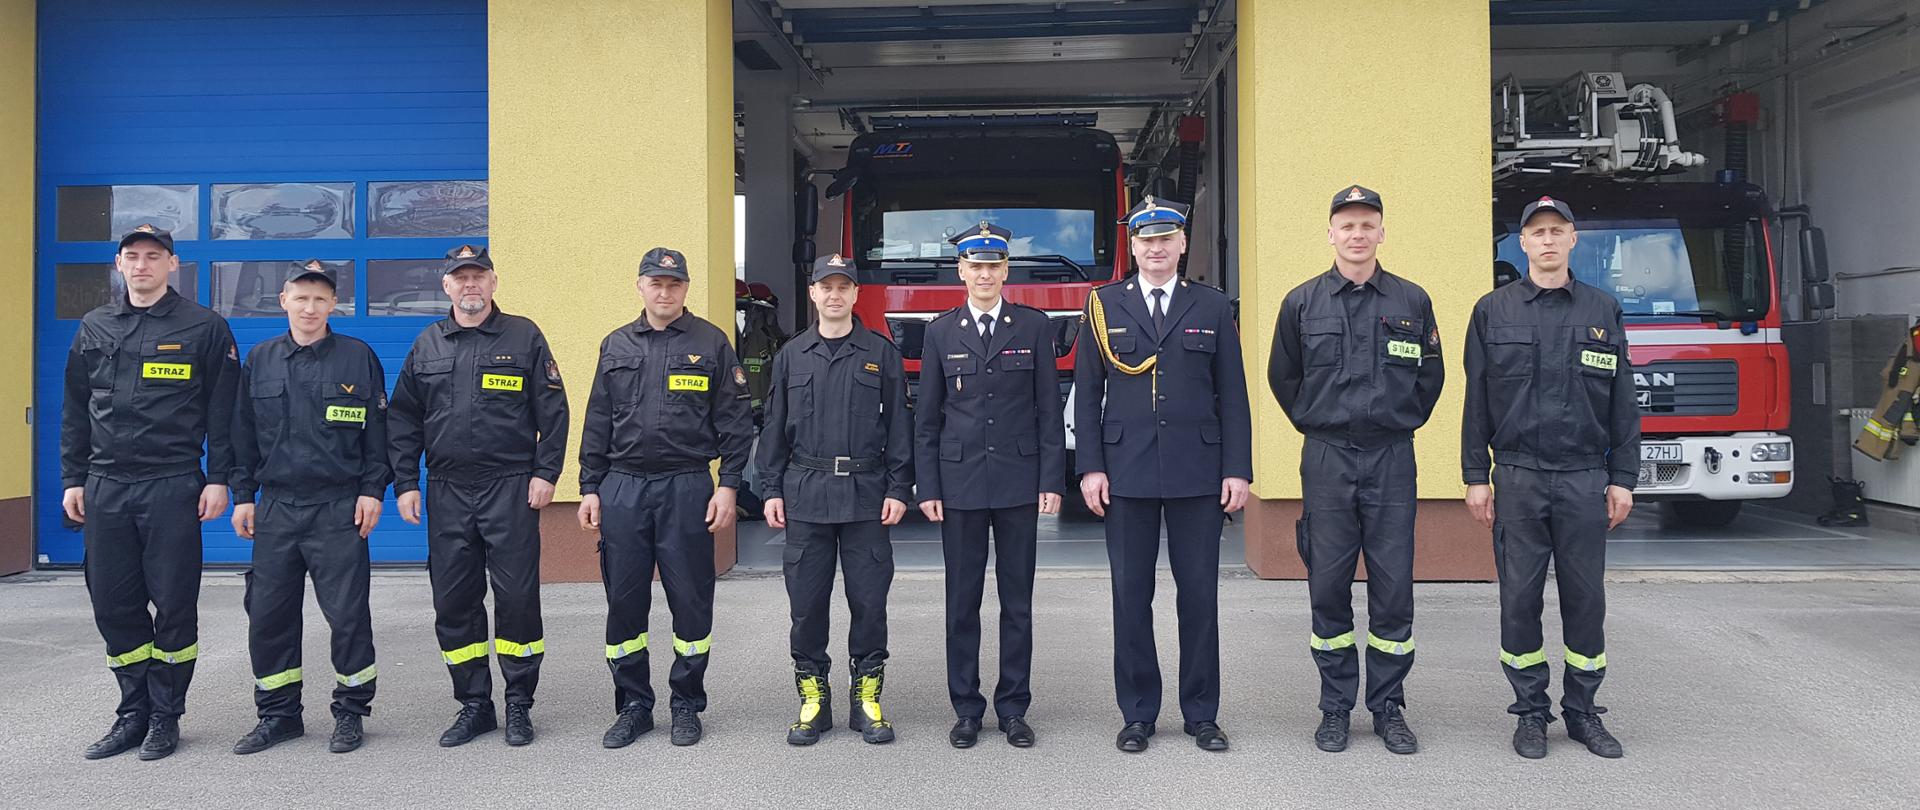 strażacy stoją na tle wozów pożarniczych, w środku stoją w mundurach dwóch strażaków